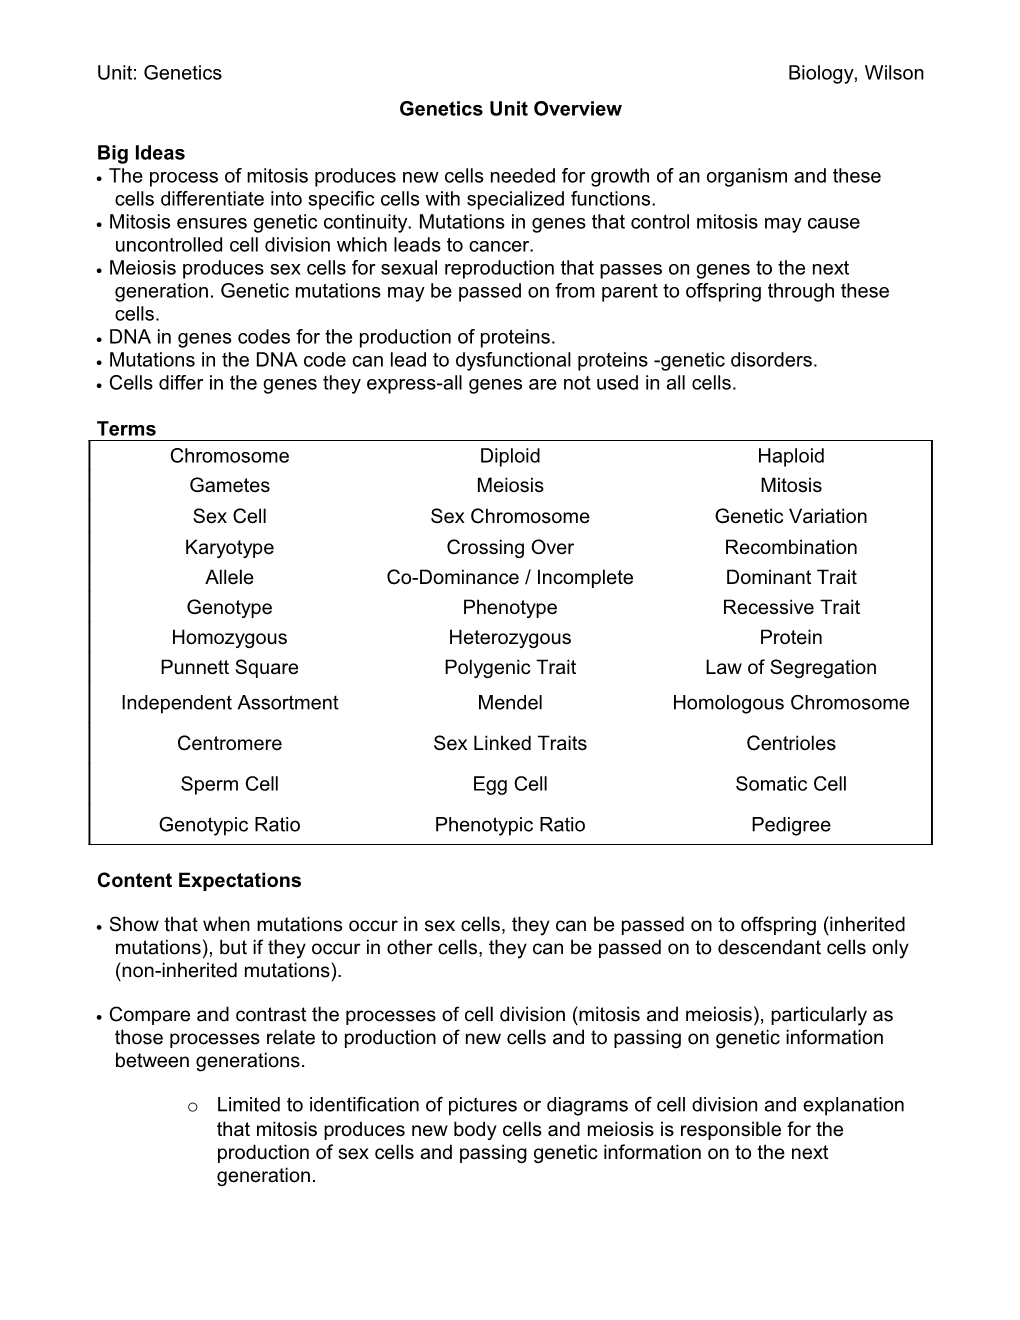 Genetics Unit Overview